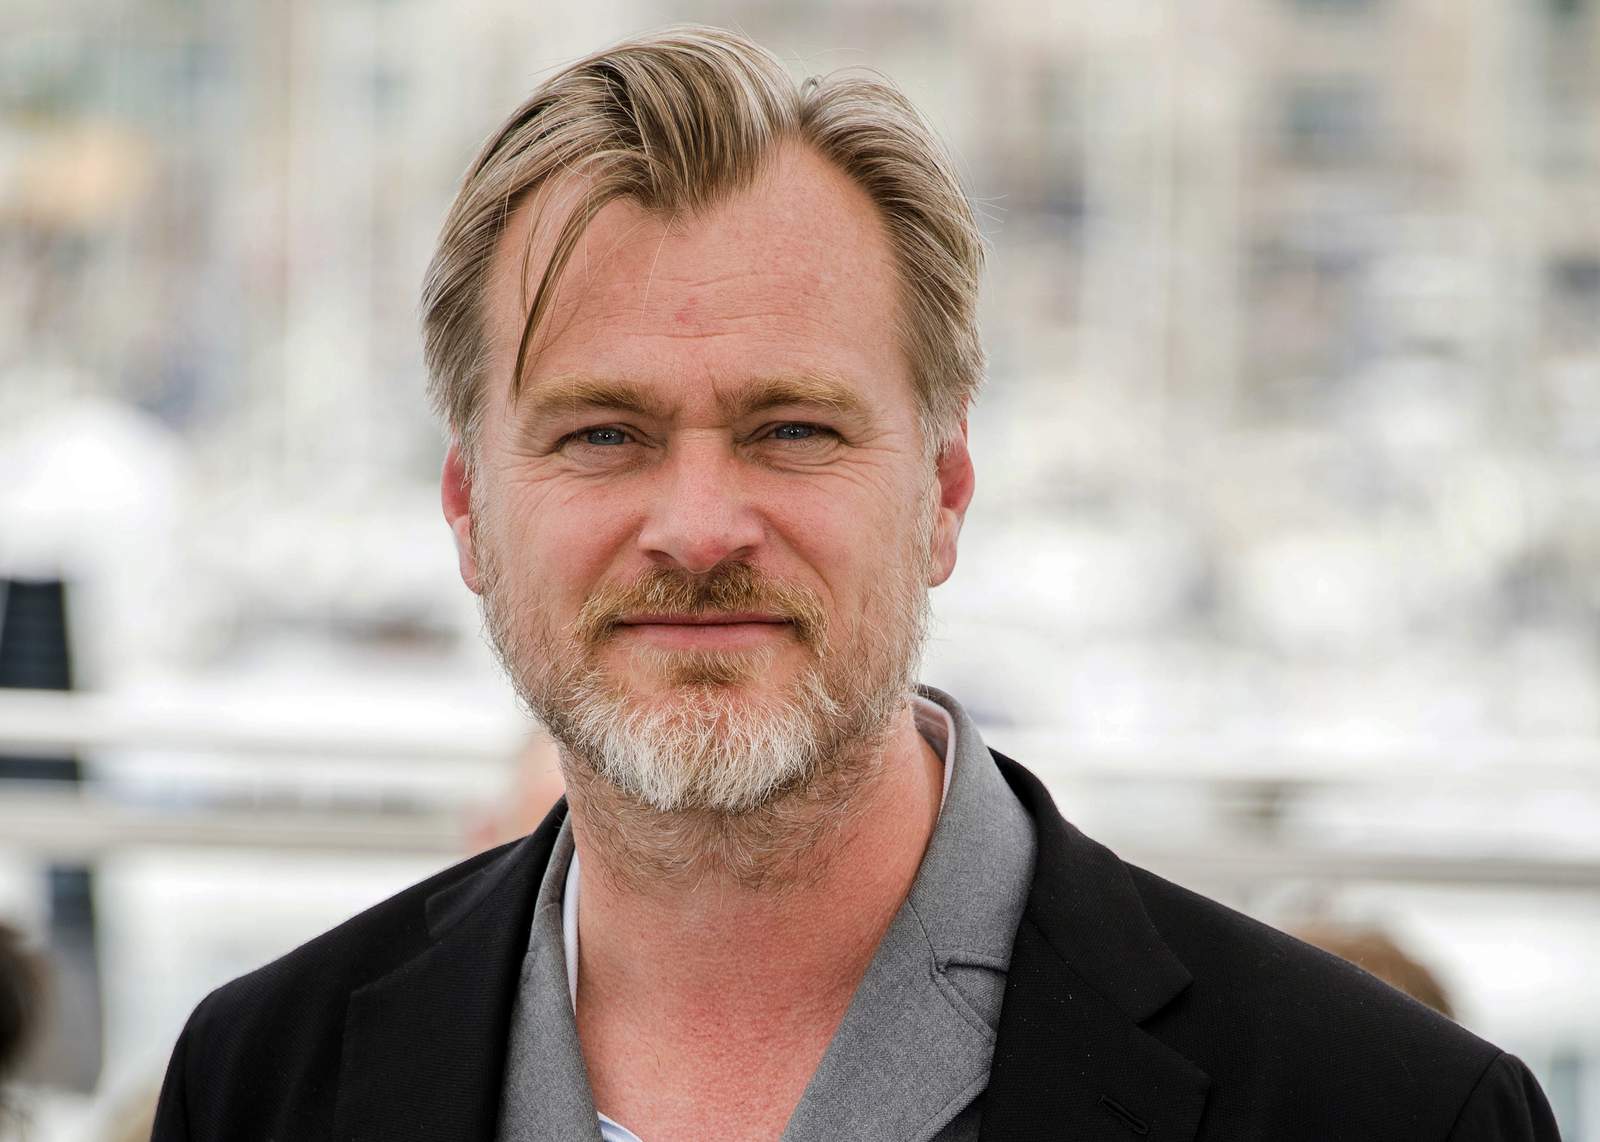 Christopher Nolan's 'Tenet' again delays big summer release